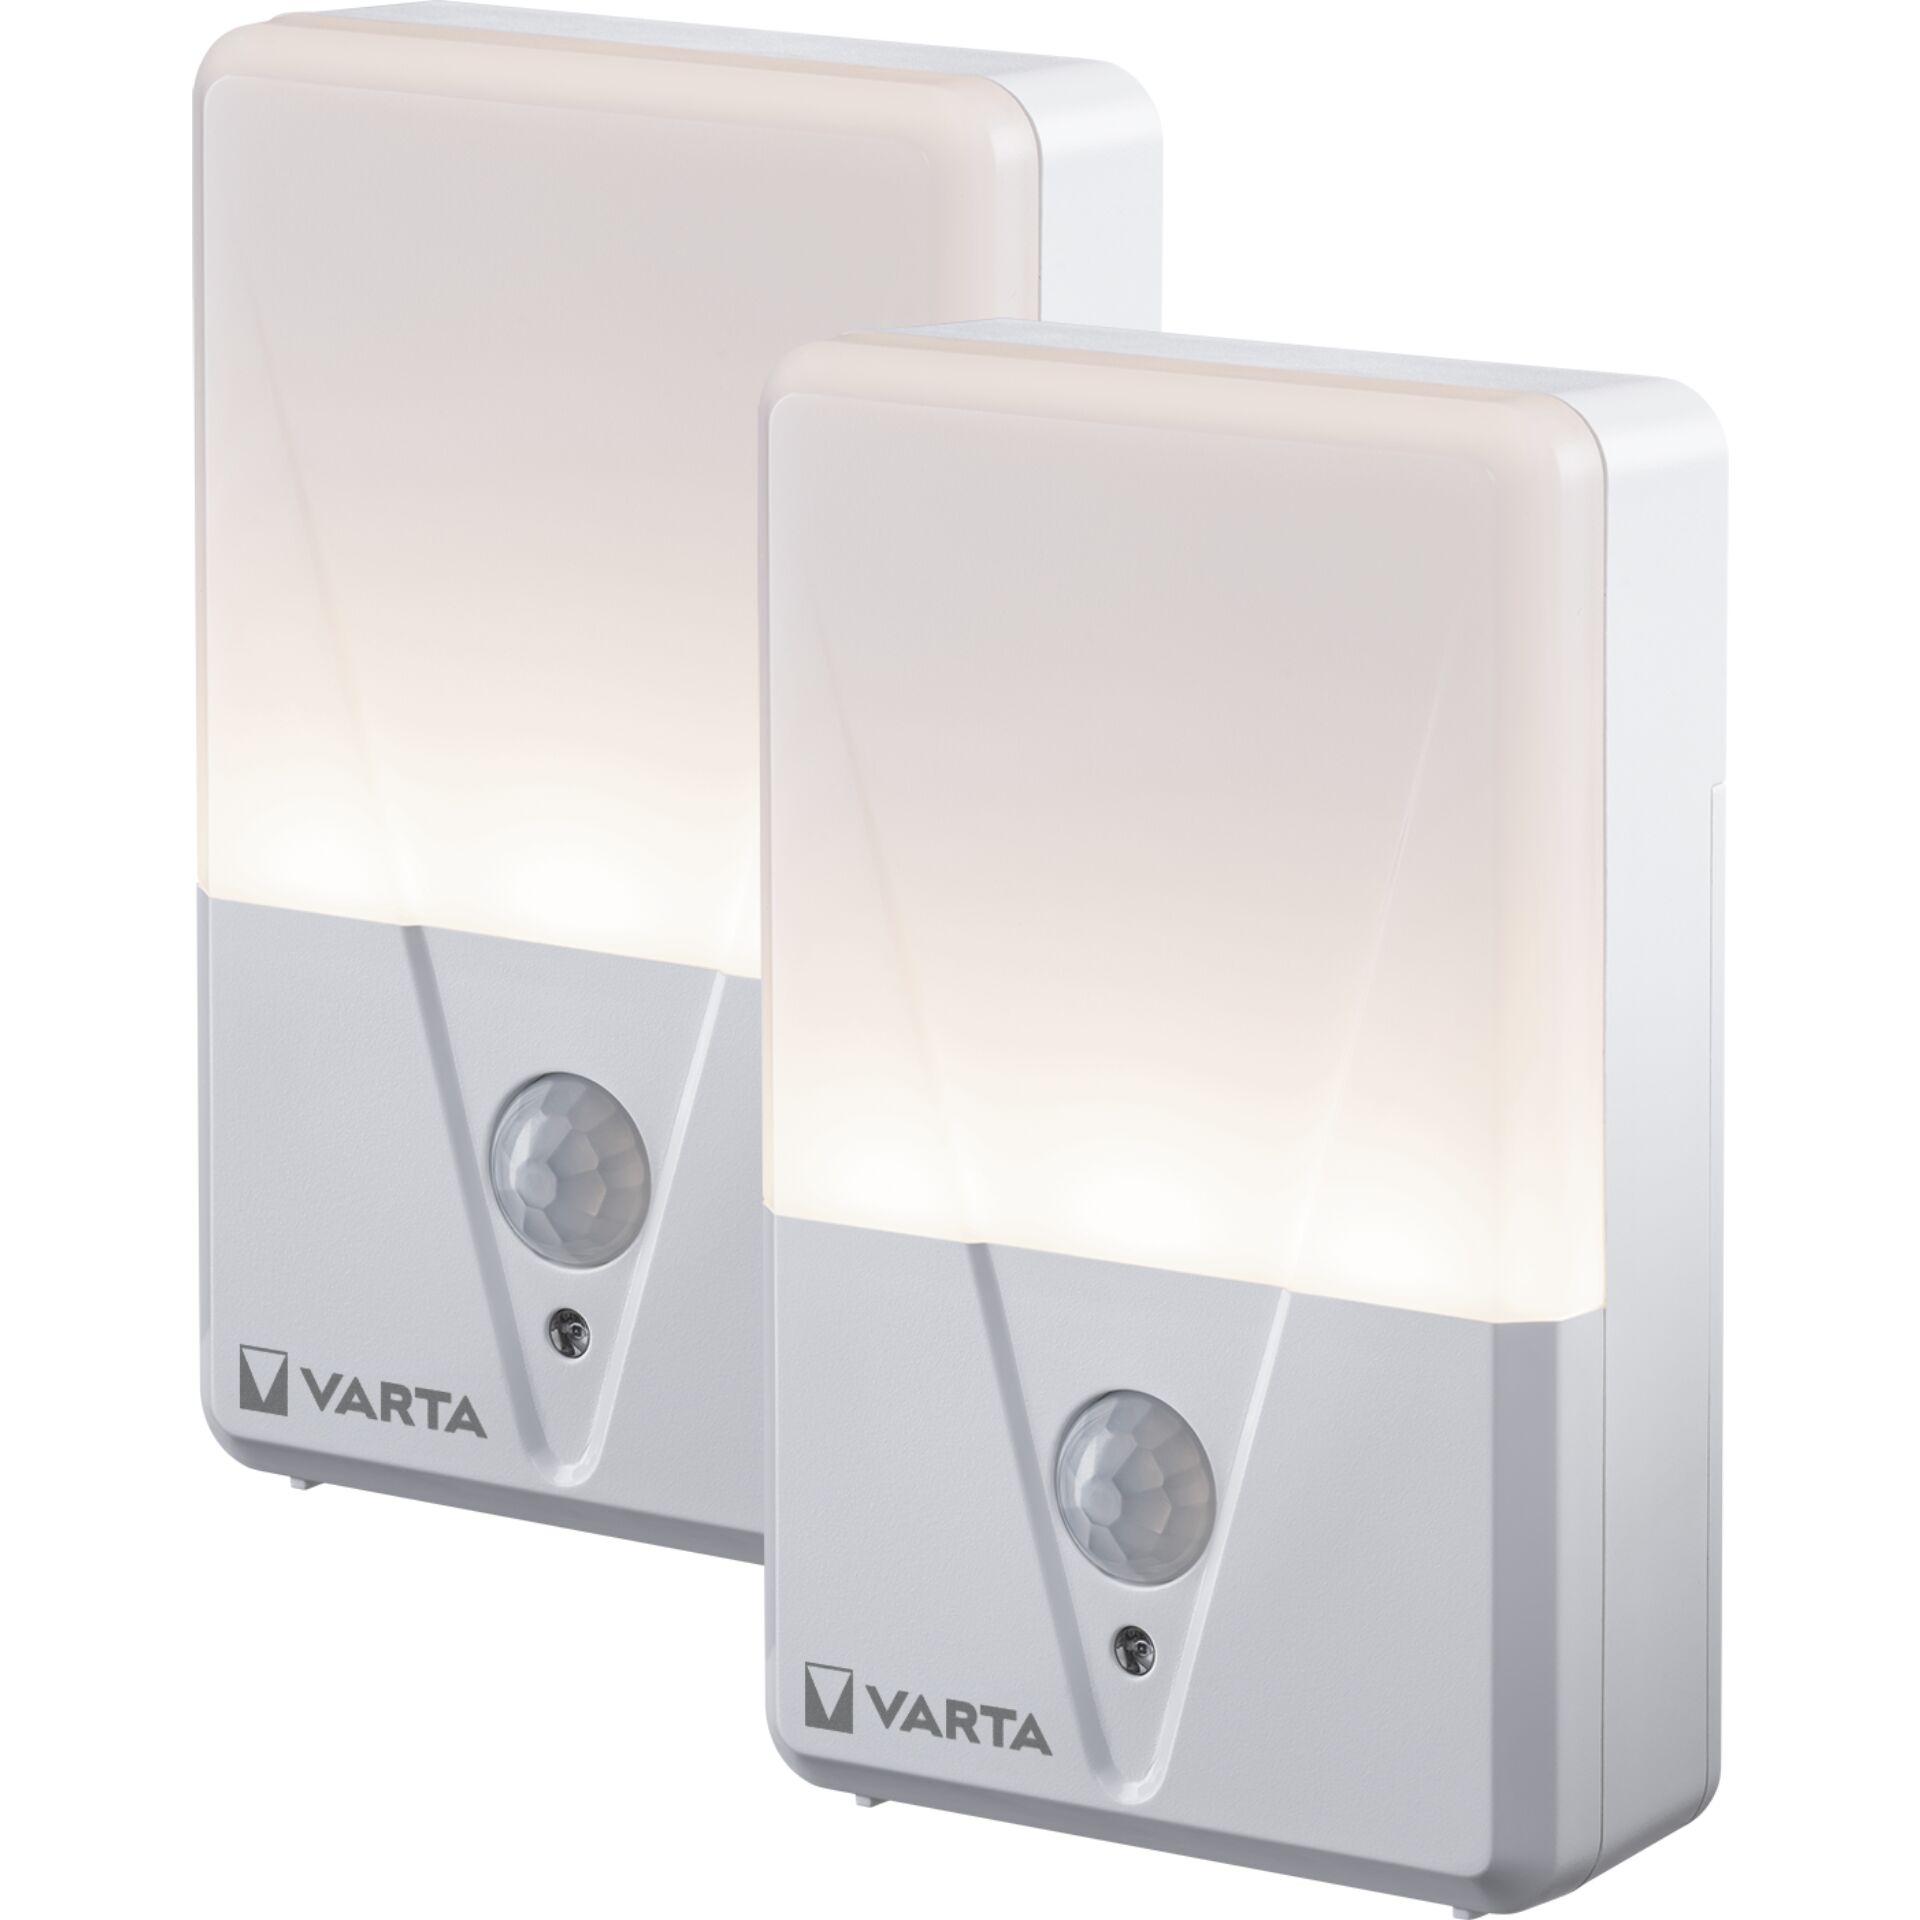 Varta Motion Sensor Night Light Twin Pack ohne Batt. 16624101402